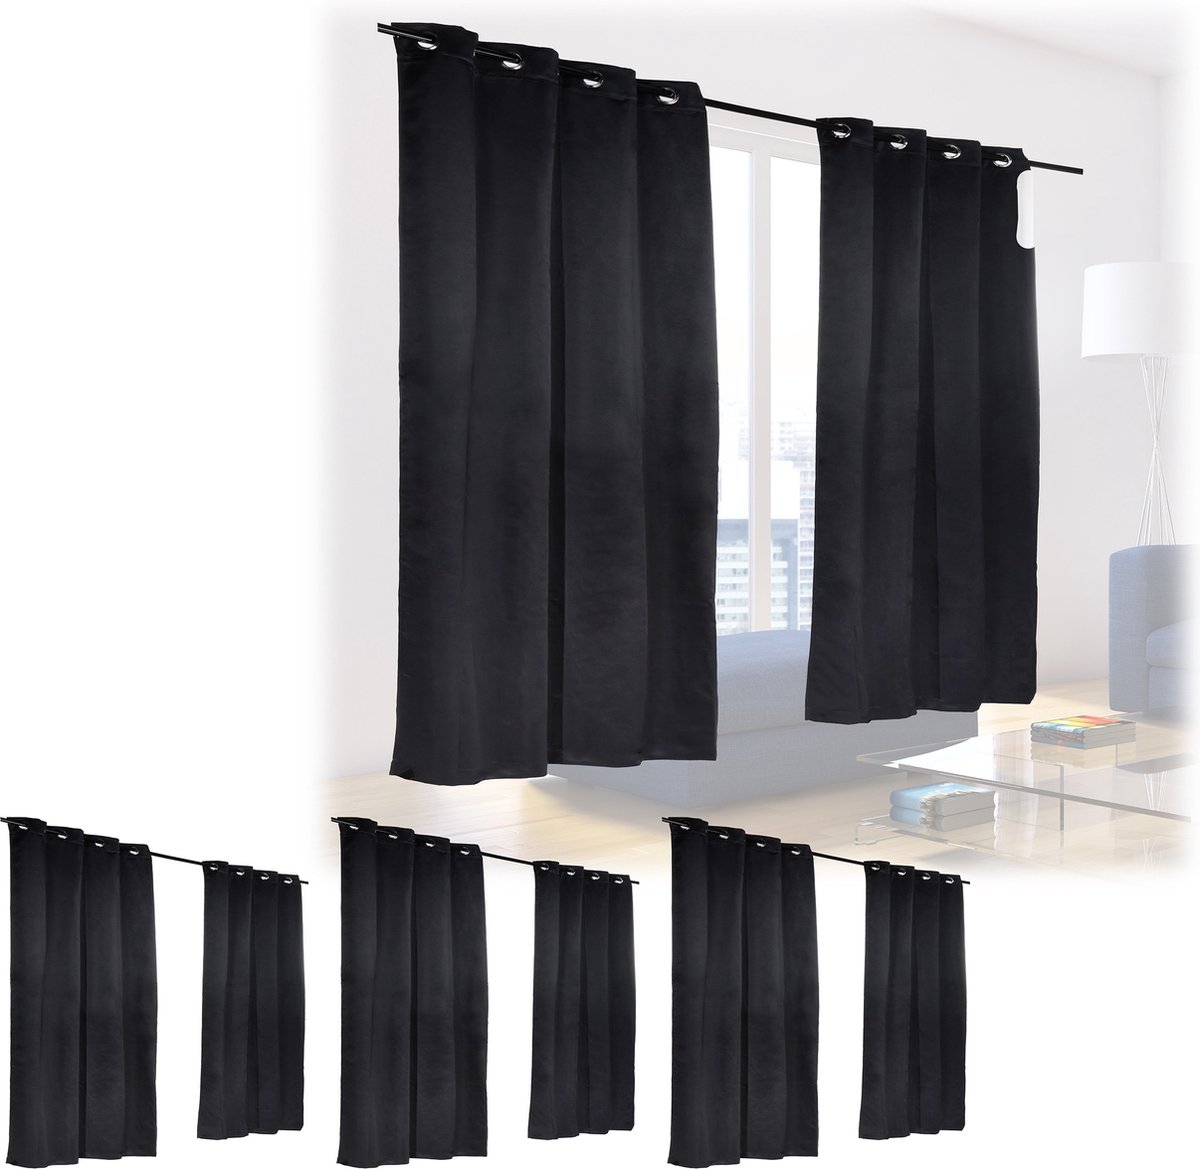 Relaxdays 8 x verduisterende gordijnen - zwart - kant en klaar - gordijn set - 245x135 cm